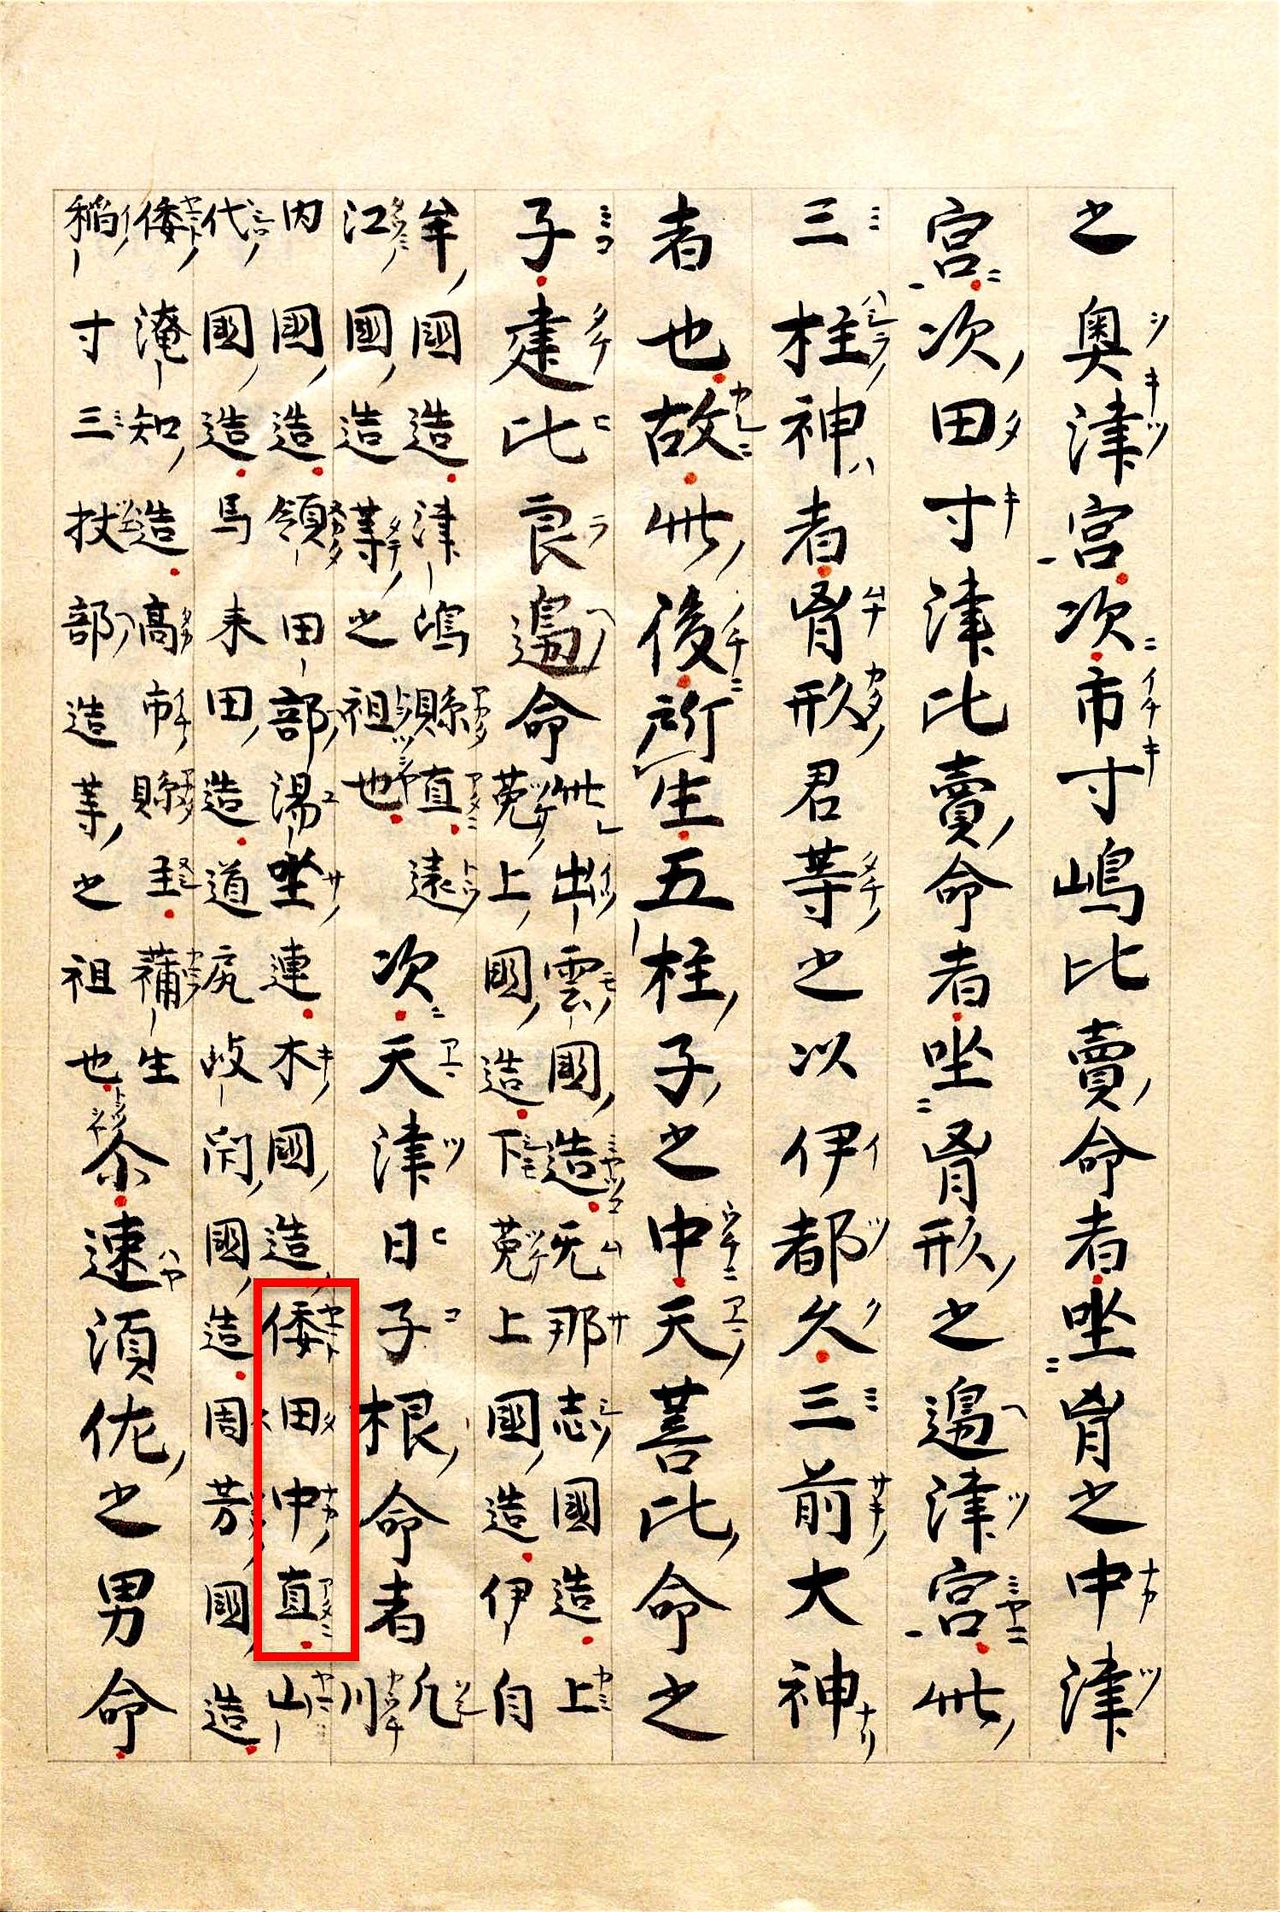 Les cinq divinités mâles nées lorsque Susanoo a mordu le magatama d'Amaterasu Ōmikami. L'encadré en rouge correspond au nom de Yamato-no-Tanaka-no-atai, qui est l'un de leurs descendants. (Avec l'aimable autorisation de la Bibliothèque nationale de la Diète).